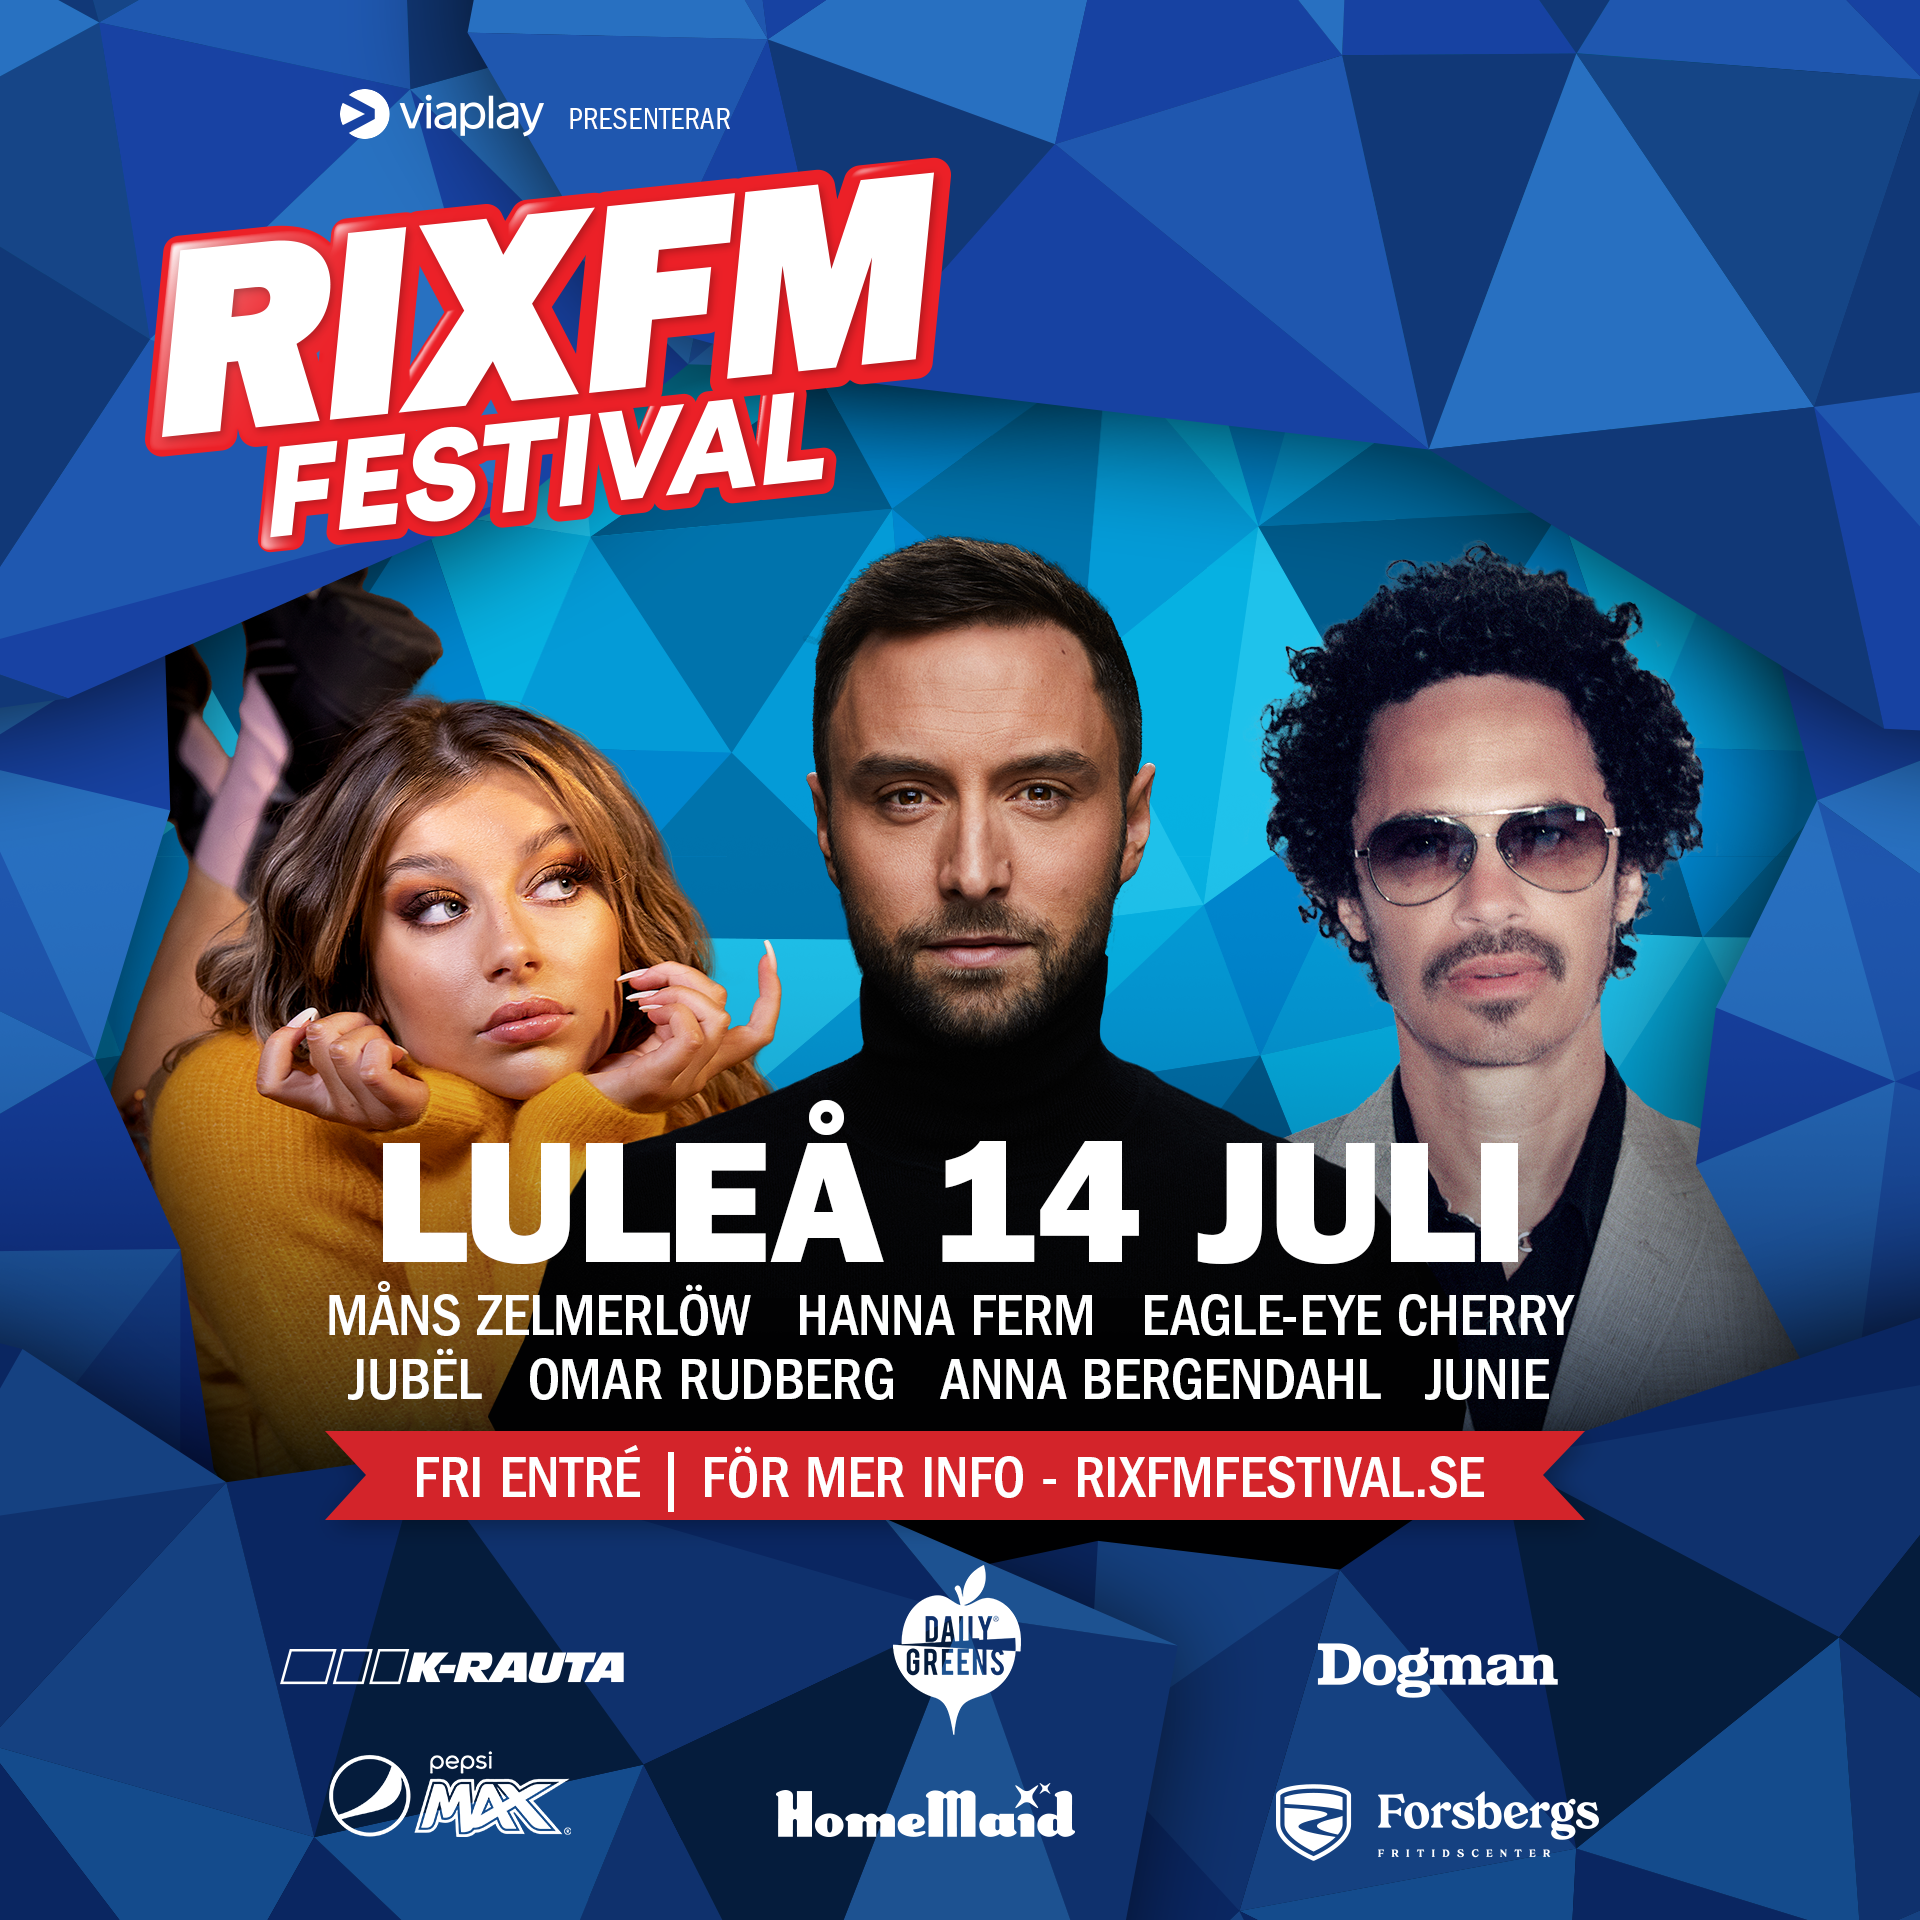 Luleåborna kan bland annat digga loss till Måns Zelmerlöw som medverkar i RIX FM Festival.